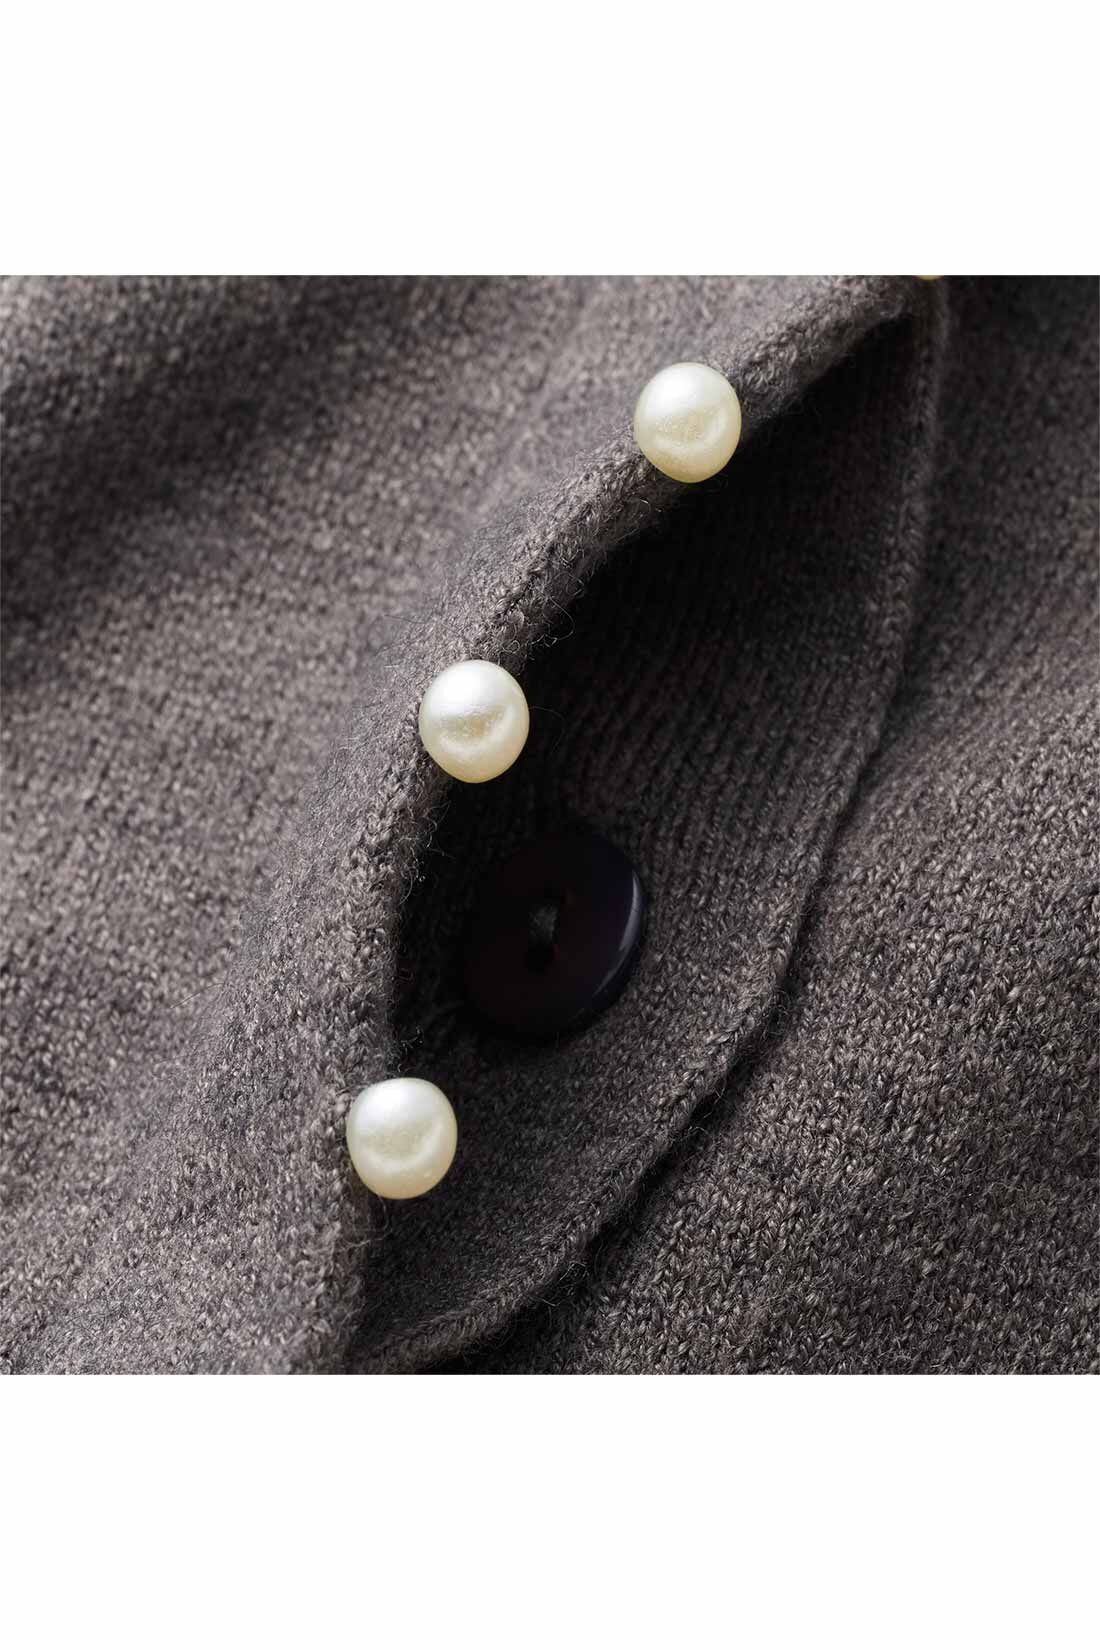 IEDIT|IEDIT[イディット]　アクセサリーみたいなミニパールが上品な 柄編み袖のカーディガン〈グレー〉|フロントボタンを隠した比翼仕立て。パールの飾りが引き立つデザインに。 ※お届けするカラーとは異なります。